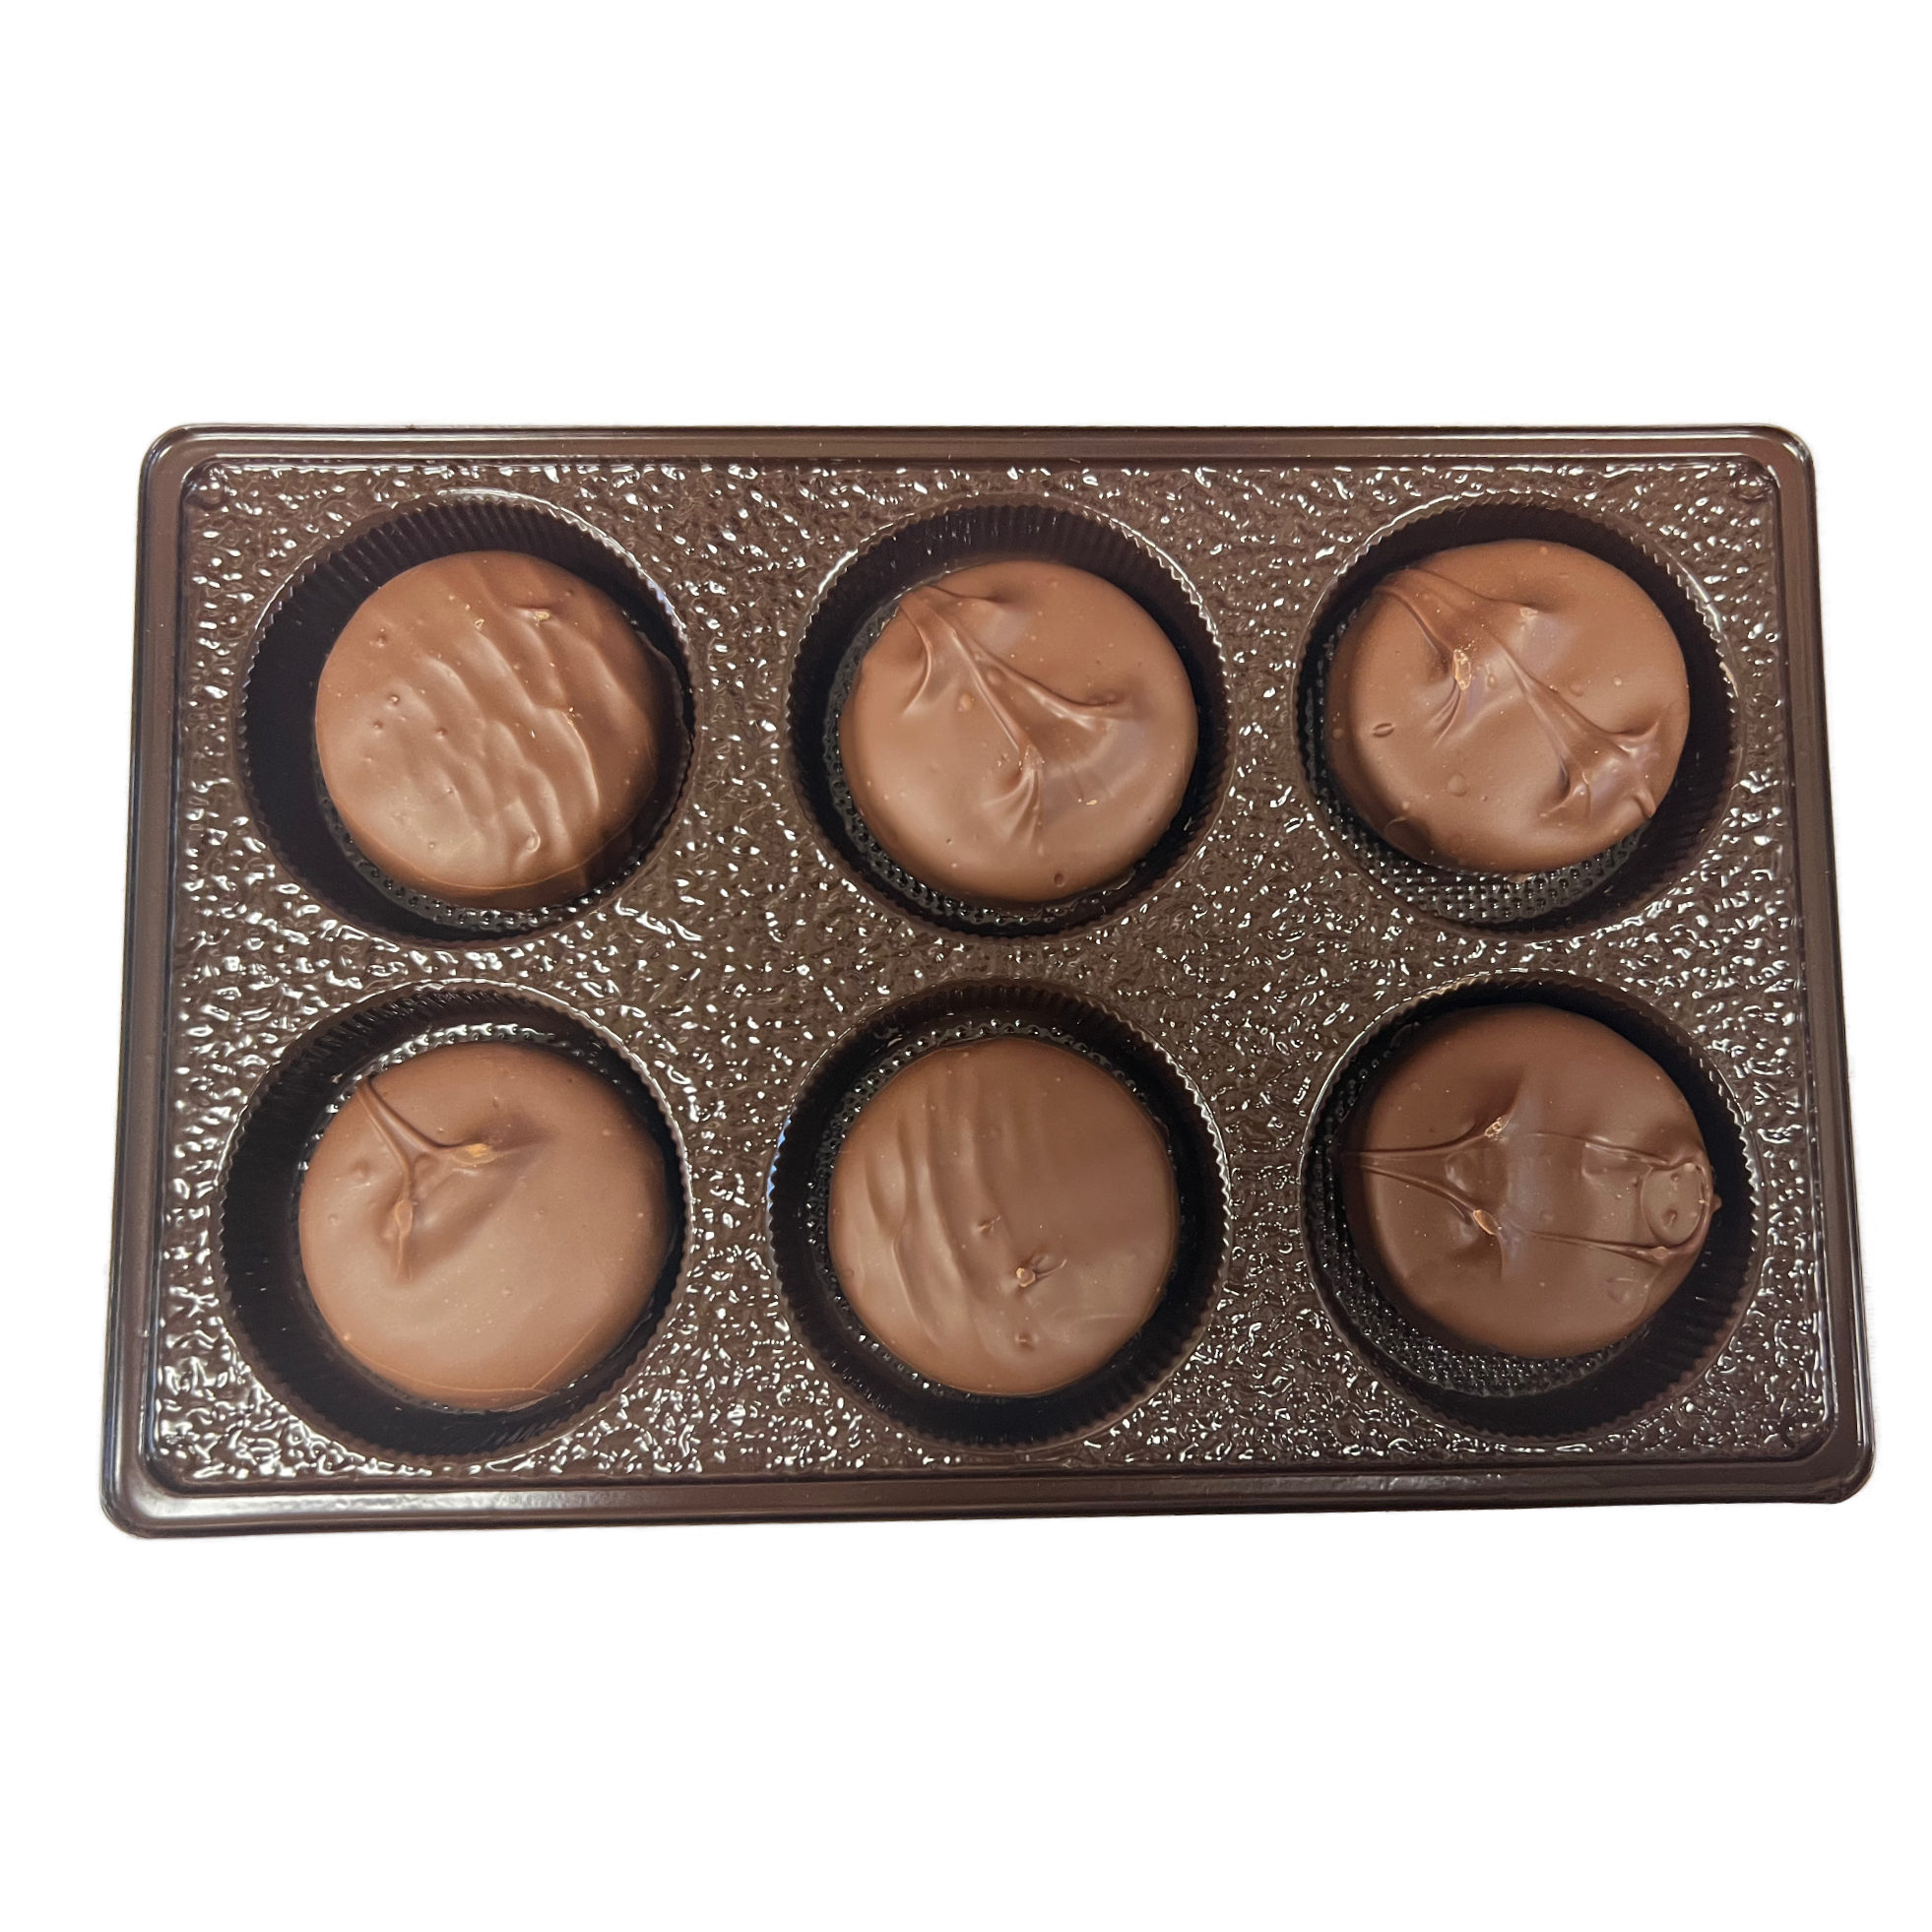 Oreo Milk Chocolate 6 Pack Box